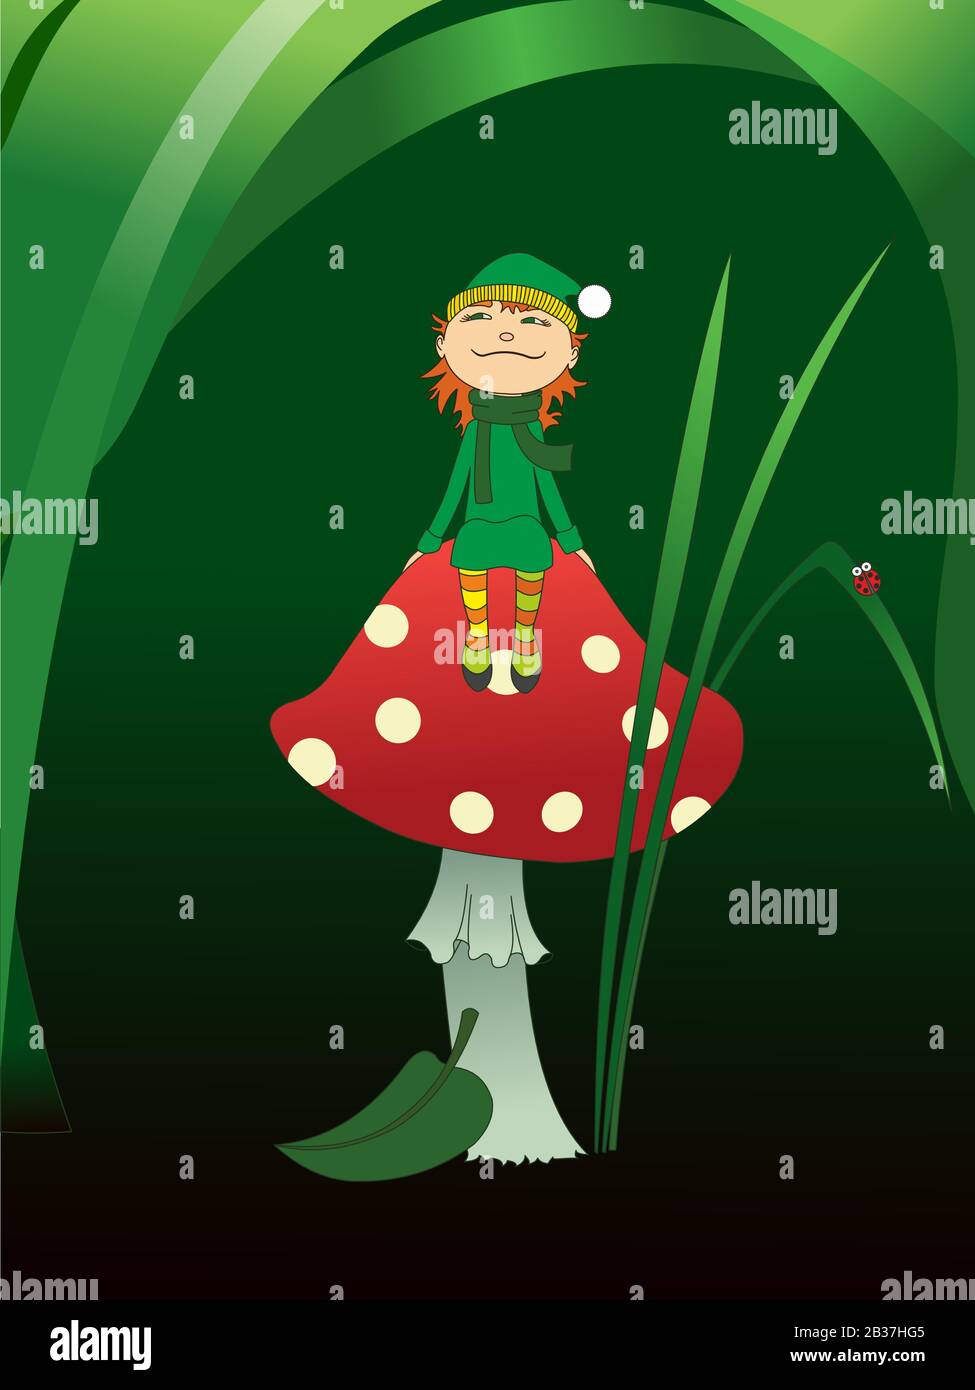 Un elfo con i capelli rossi in una cuffia, vestiti verdi e golf a righe si siede su un fungo contro uno sfondo di foglie verdi. Ladybug su una lama di erba. Illustrazione Vettoriale